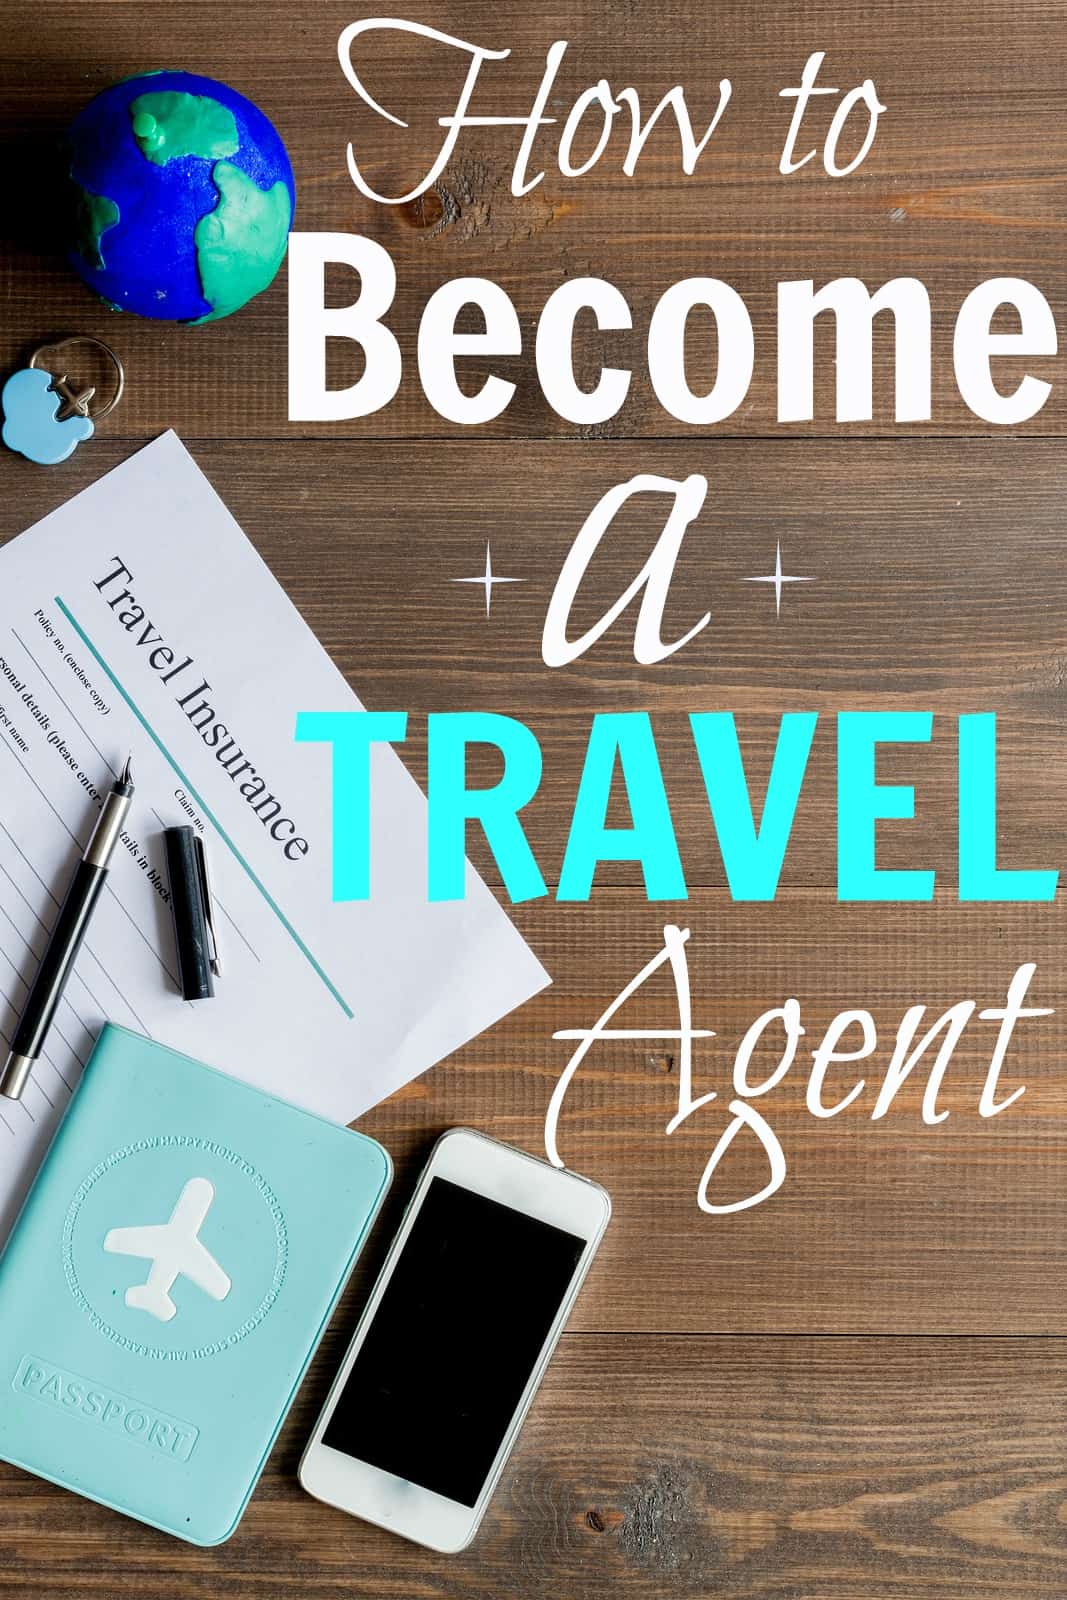 travel agent worth it